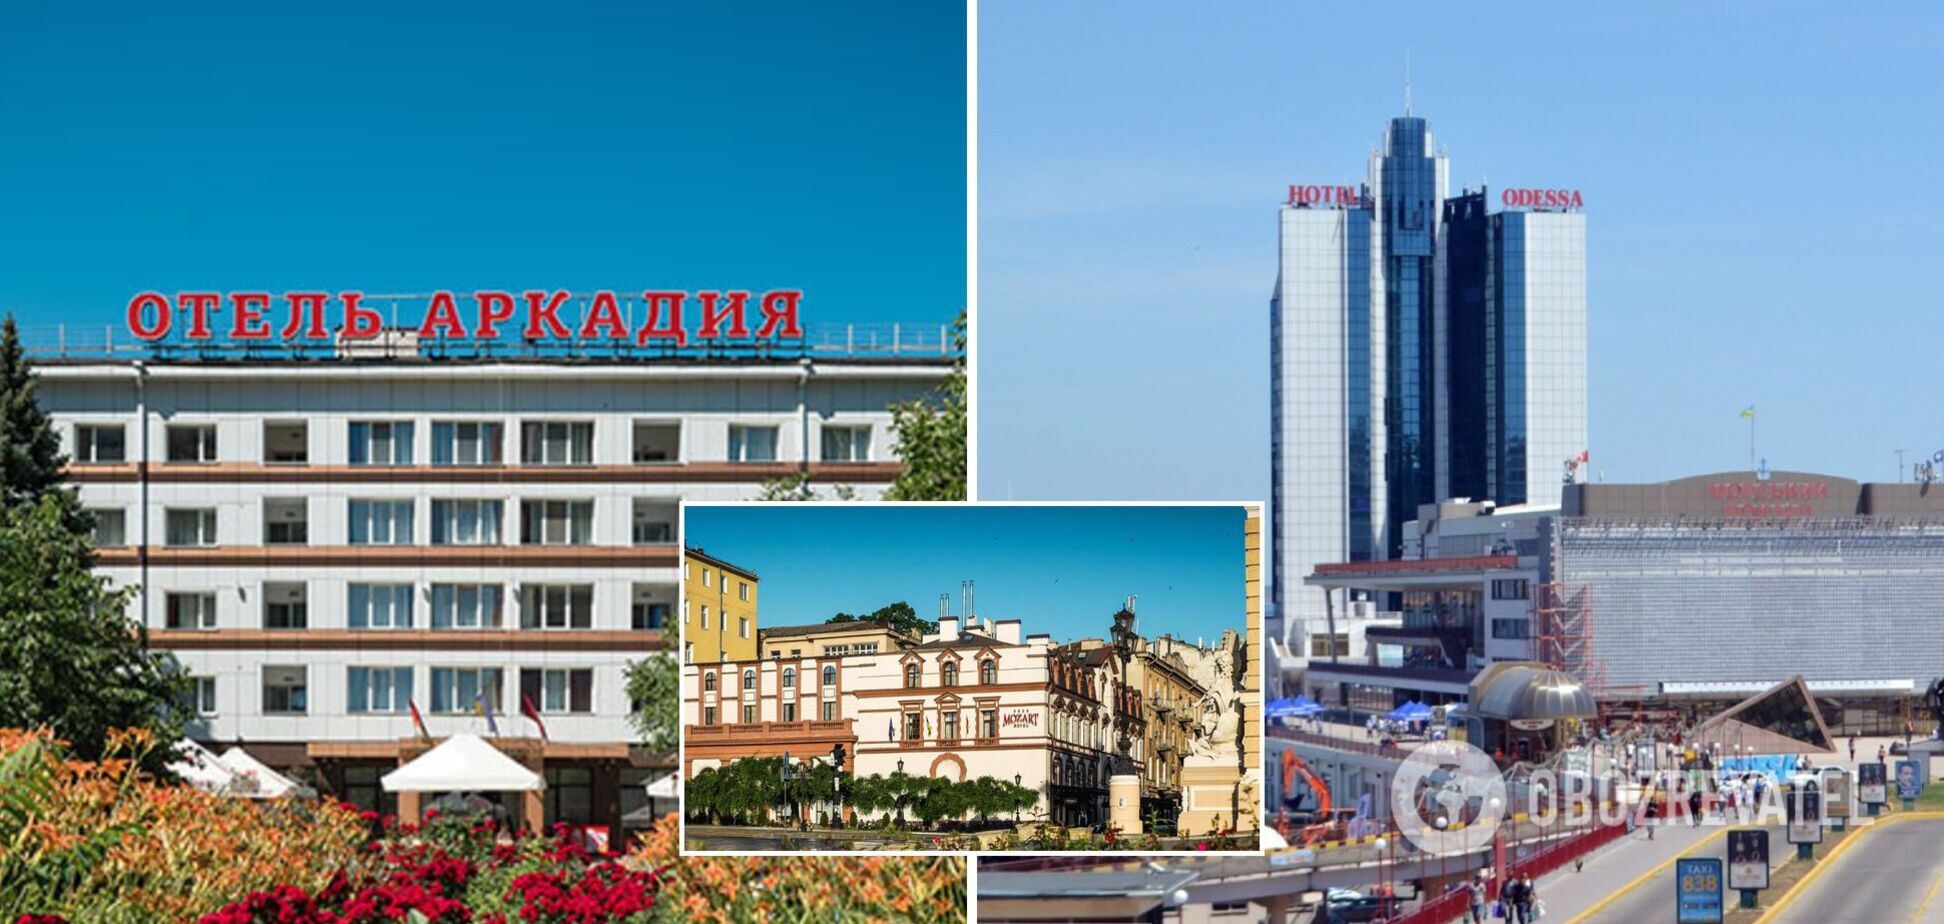 В Одессе арестовали известные гостиницы, принадлежащие россиянам. Фото и детали решения суда